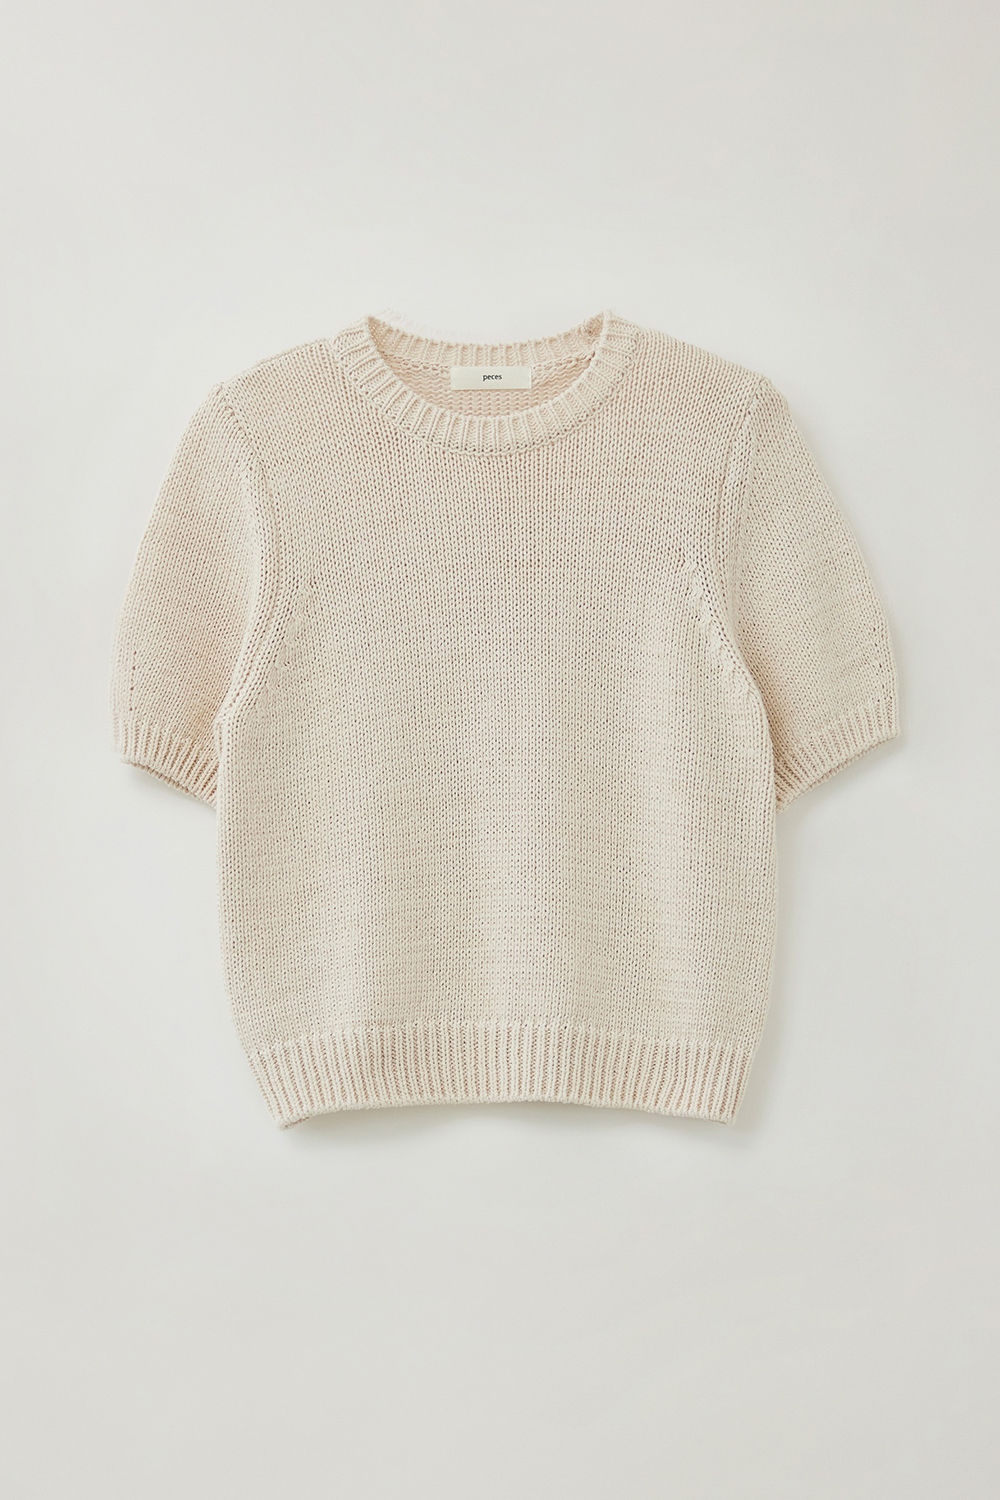 Jeanne knit (C/Beige)